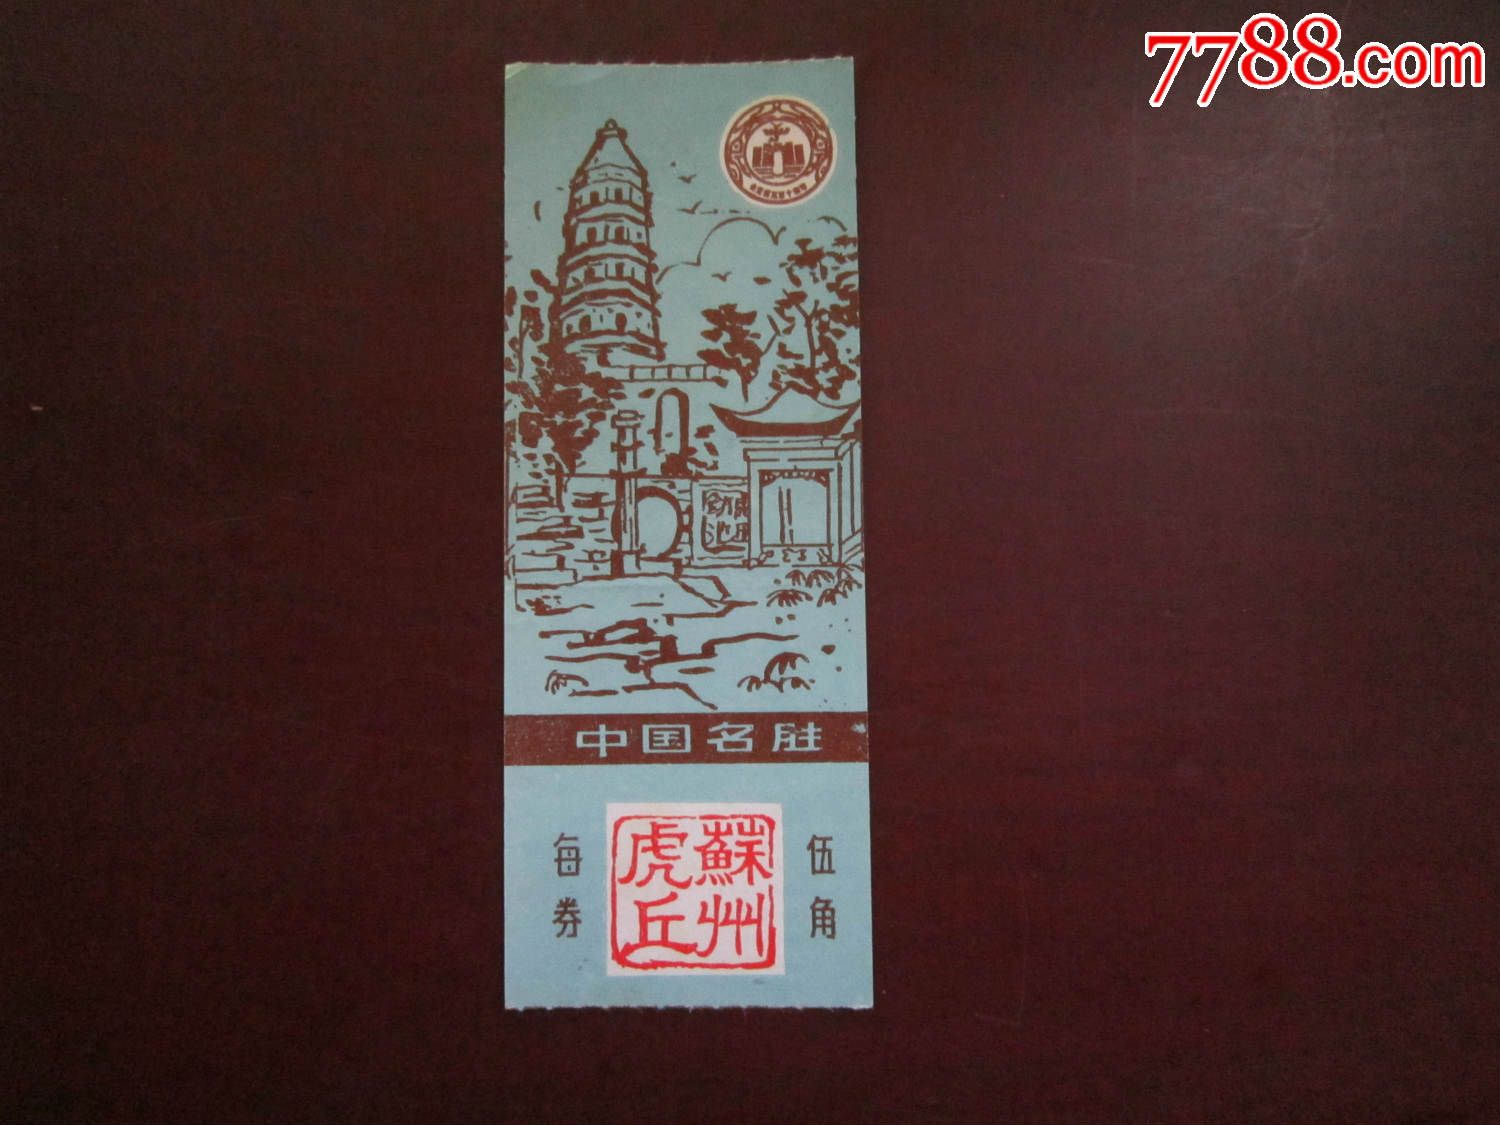 苏州虎丘(门票)-价格:1元-se32324923-旅游景点